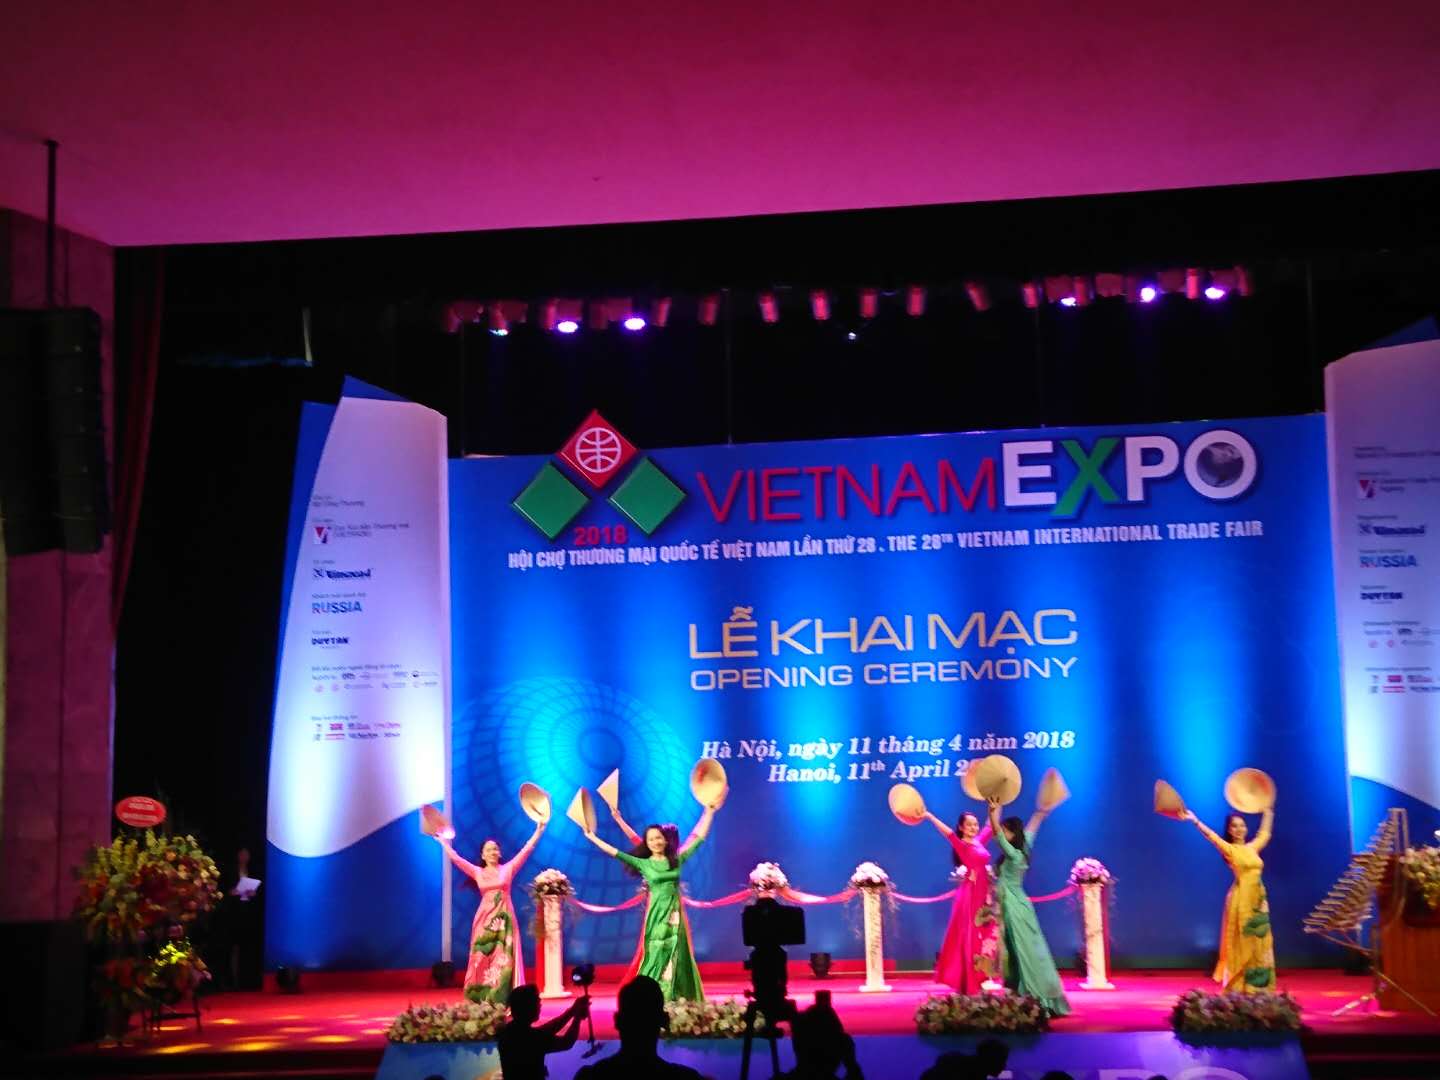 2019*29届越南河内国际贸易博览会暨电子产品展